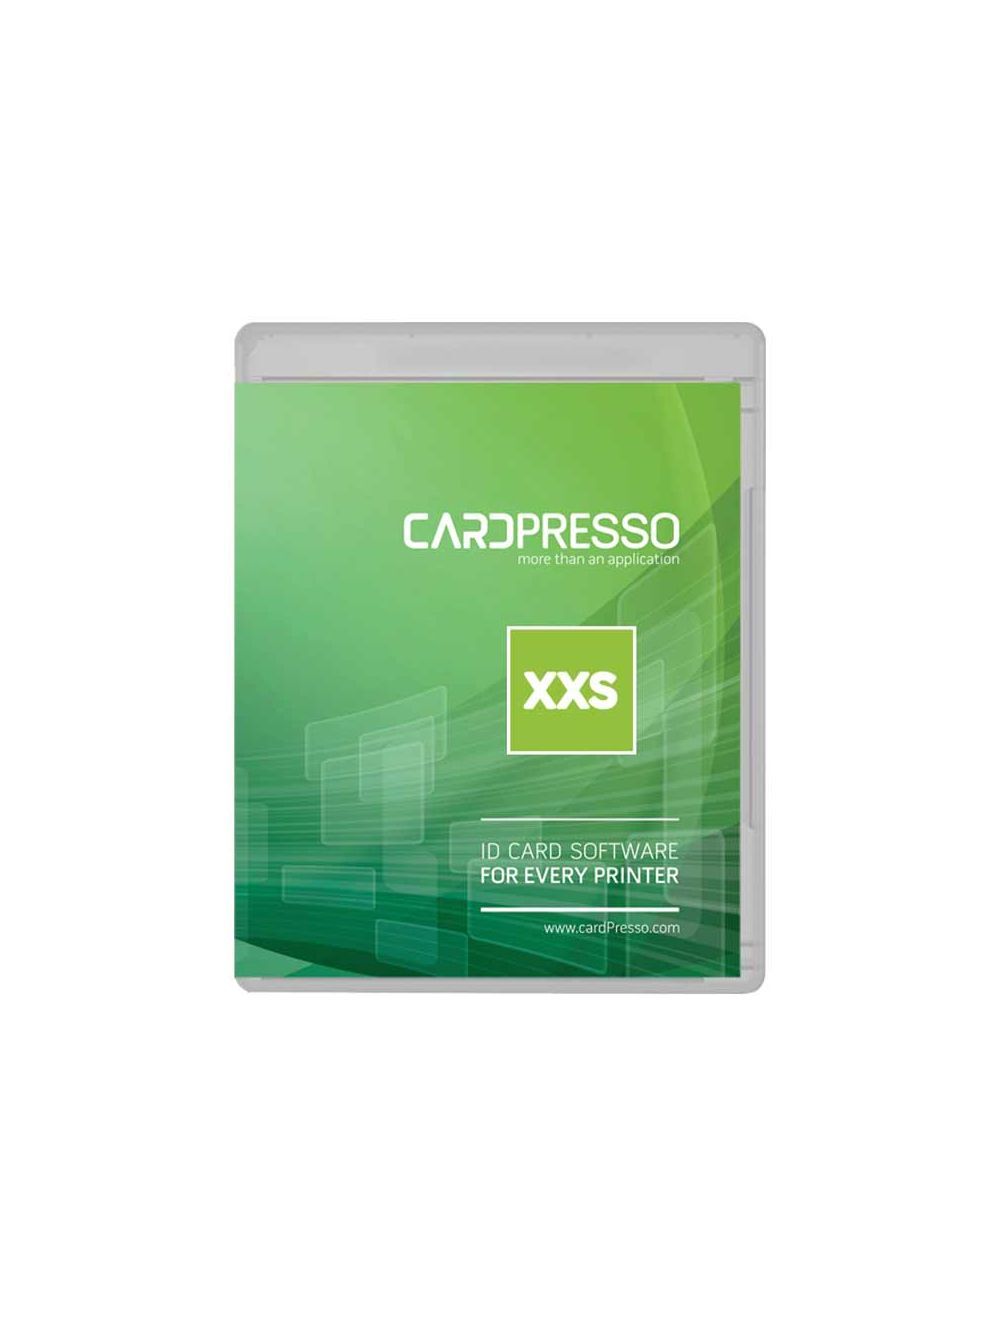 Cardpresso-xxs-edition-case